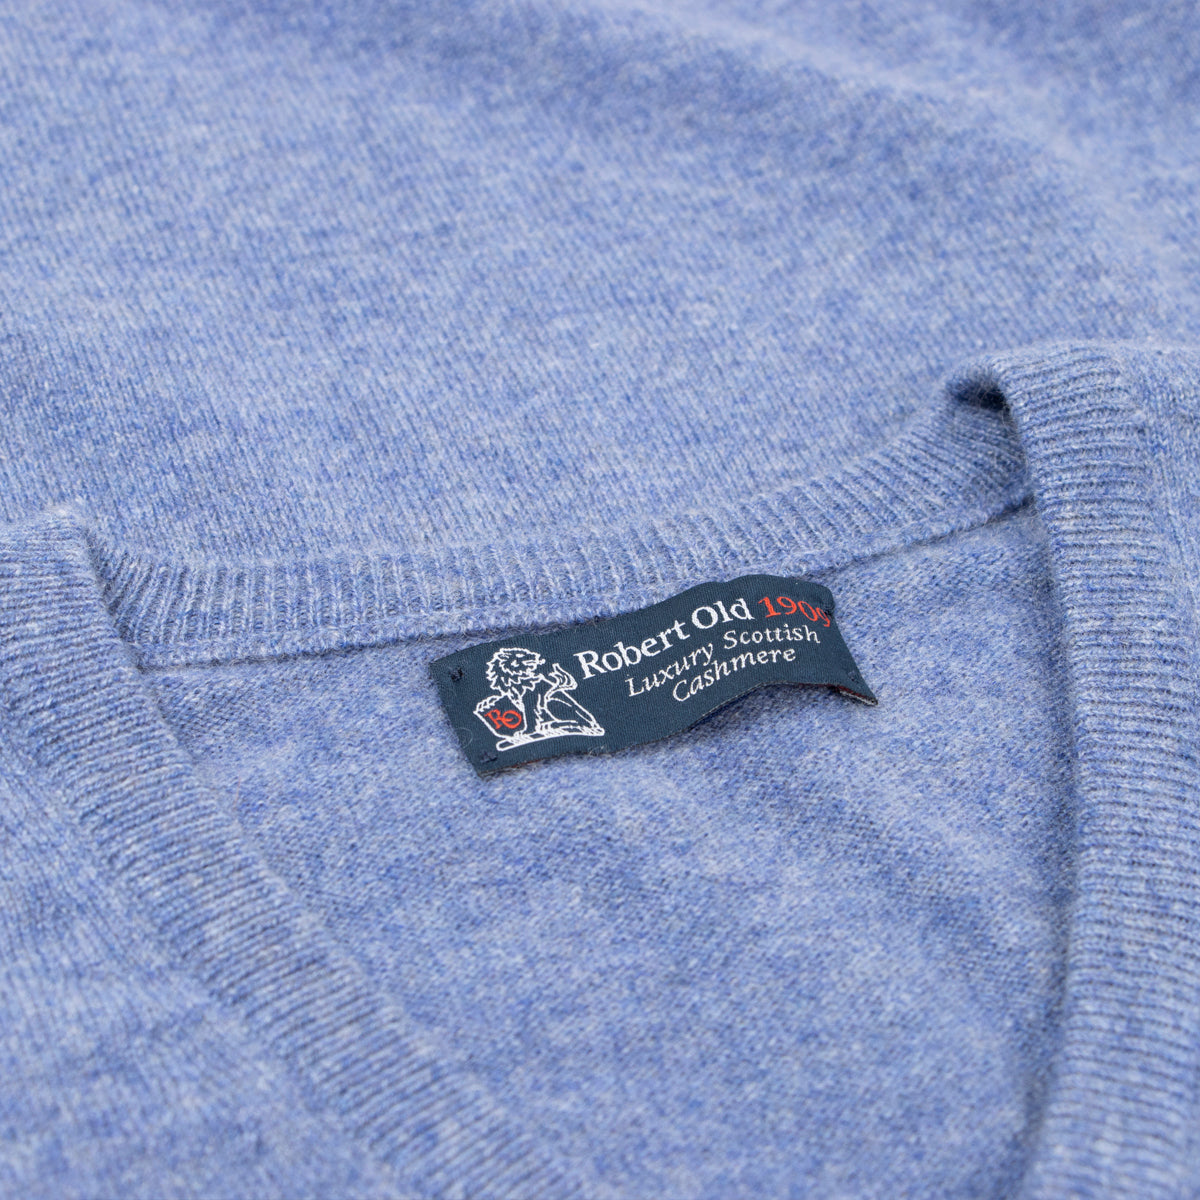 Lapis Blue Blenheim Cashmere Sleeveless V-Neck Sweater  Robert Old   